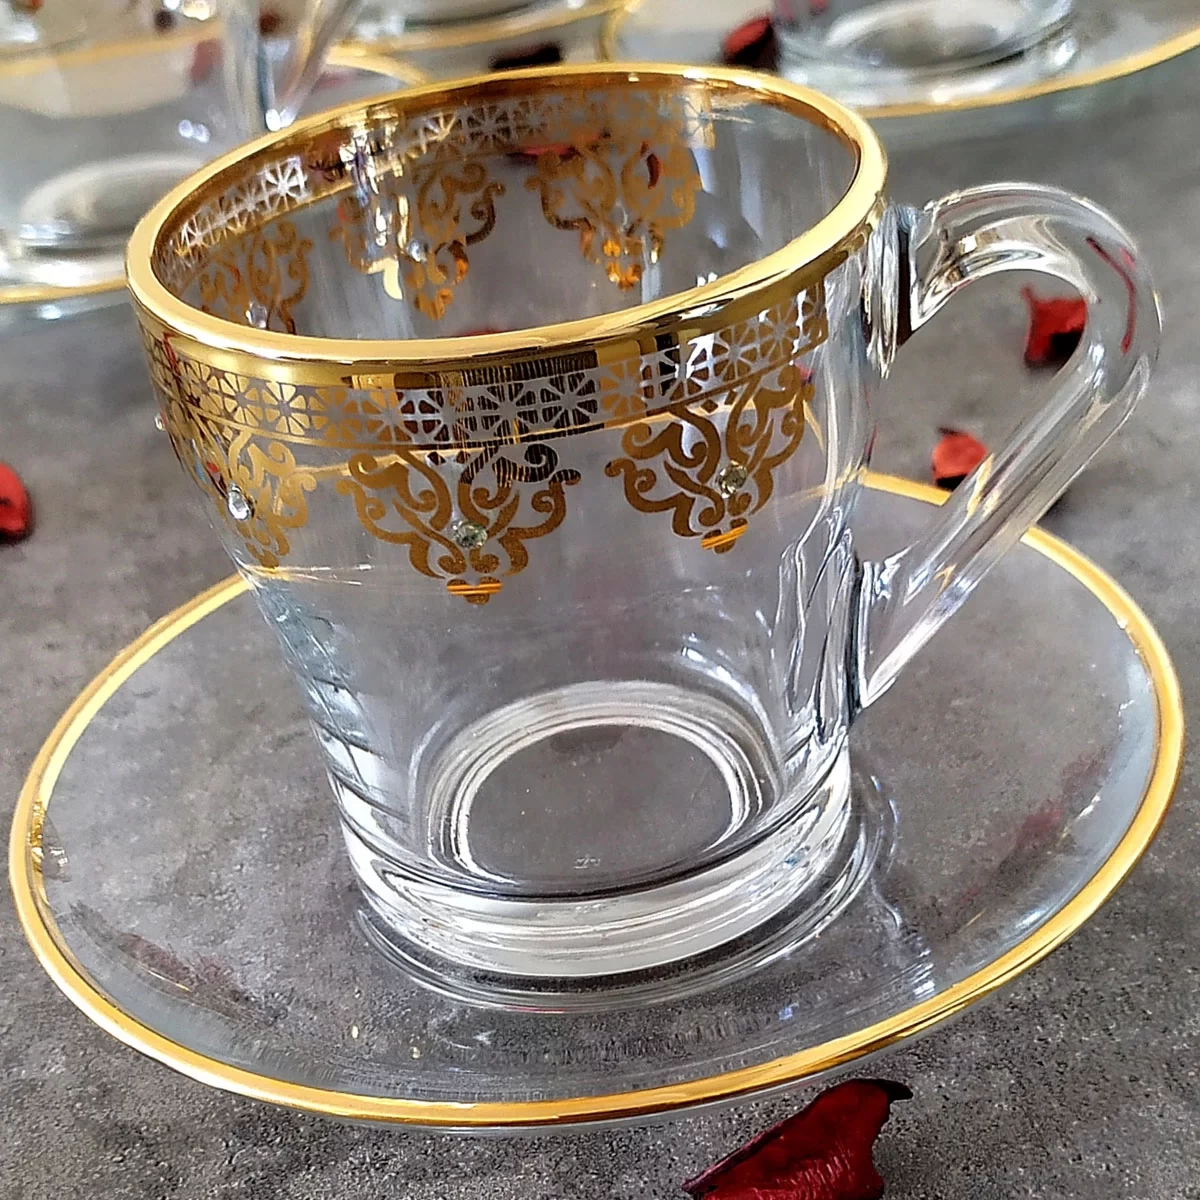 Abka Ottoman Kulplu Çay ve Nescafe Fincan Takımı- 6 Kişilik